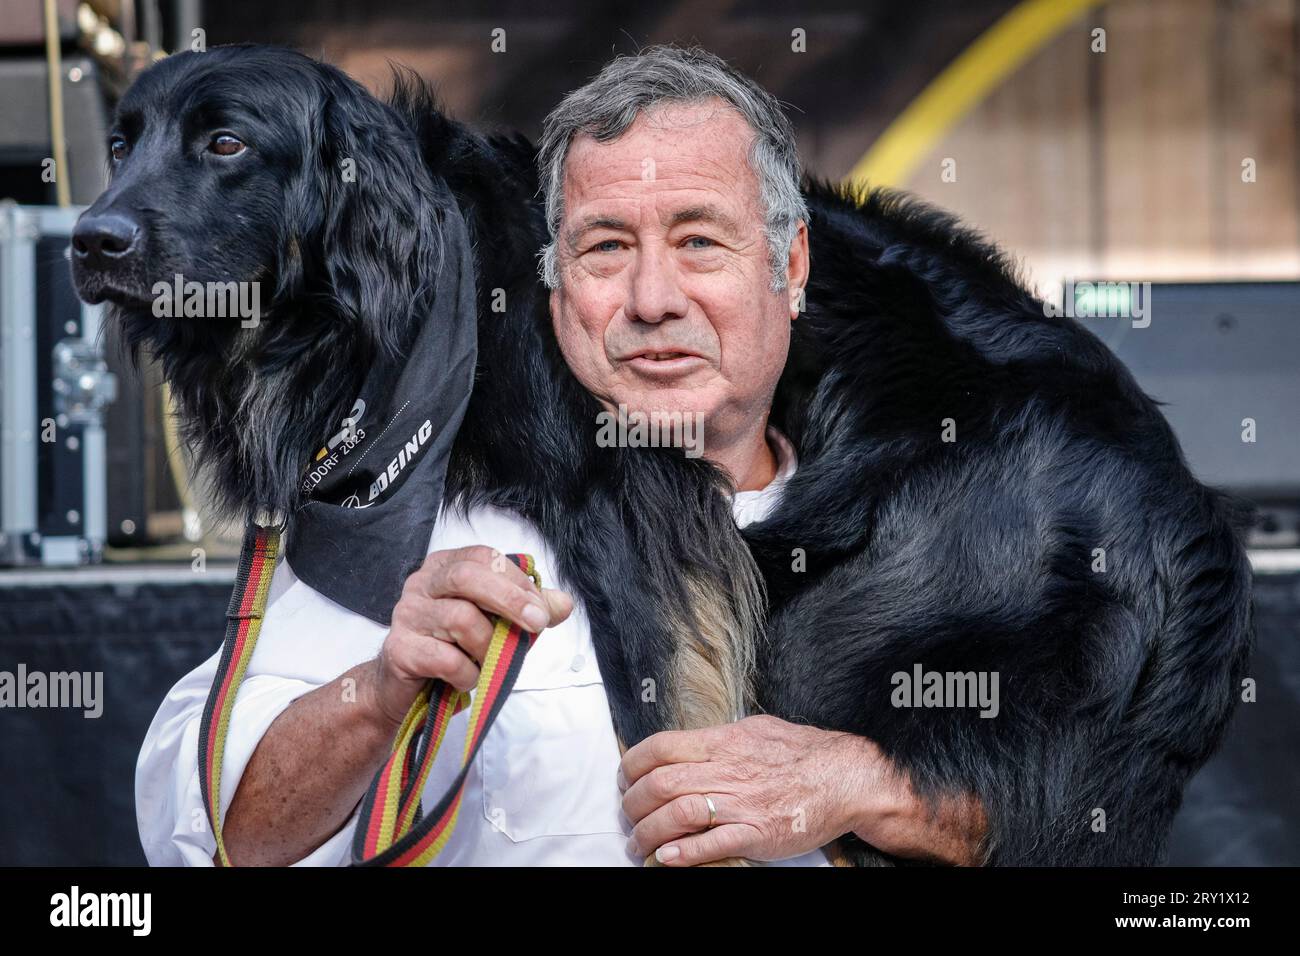 Labradoodle Doubaz, chien de service, d'assistance et de thérapie avec son compagnon humain John, Invictus Games Düsseldorf, Allemagne Banque D'Images